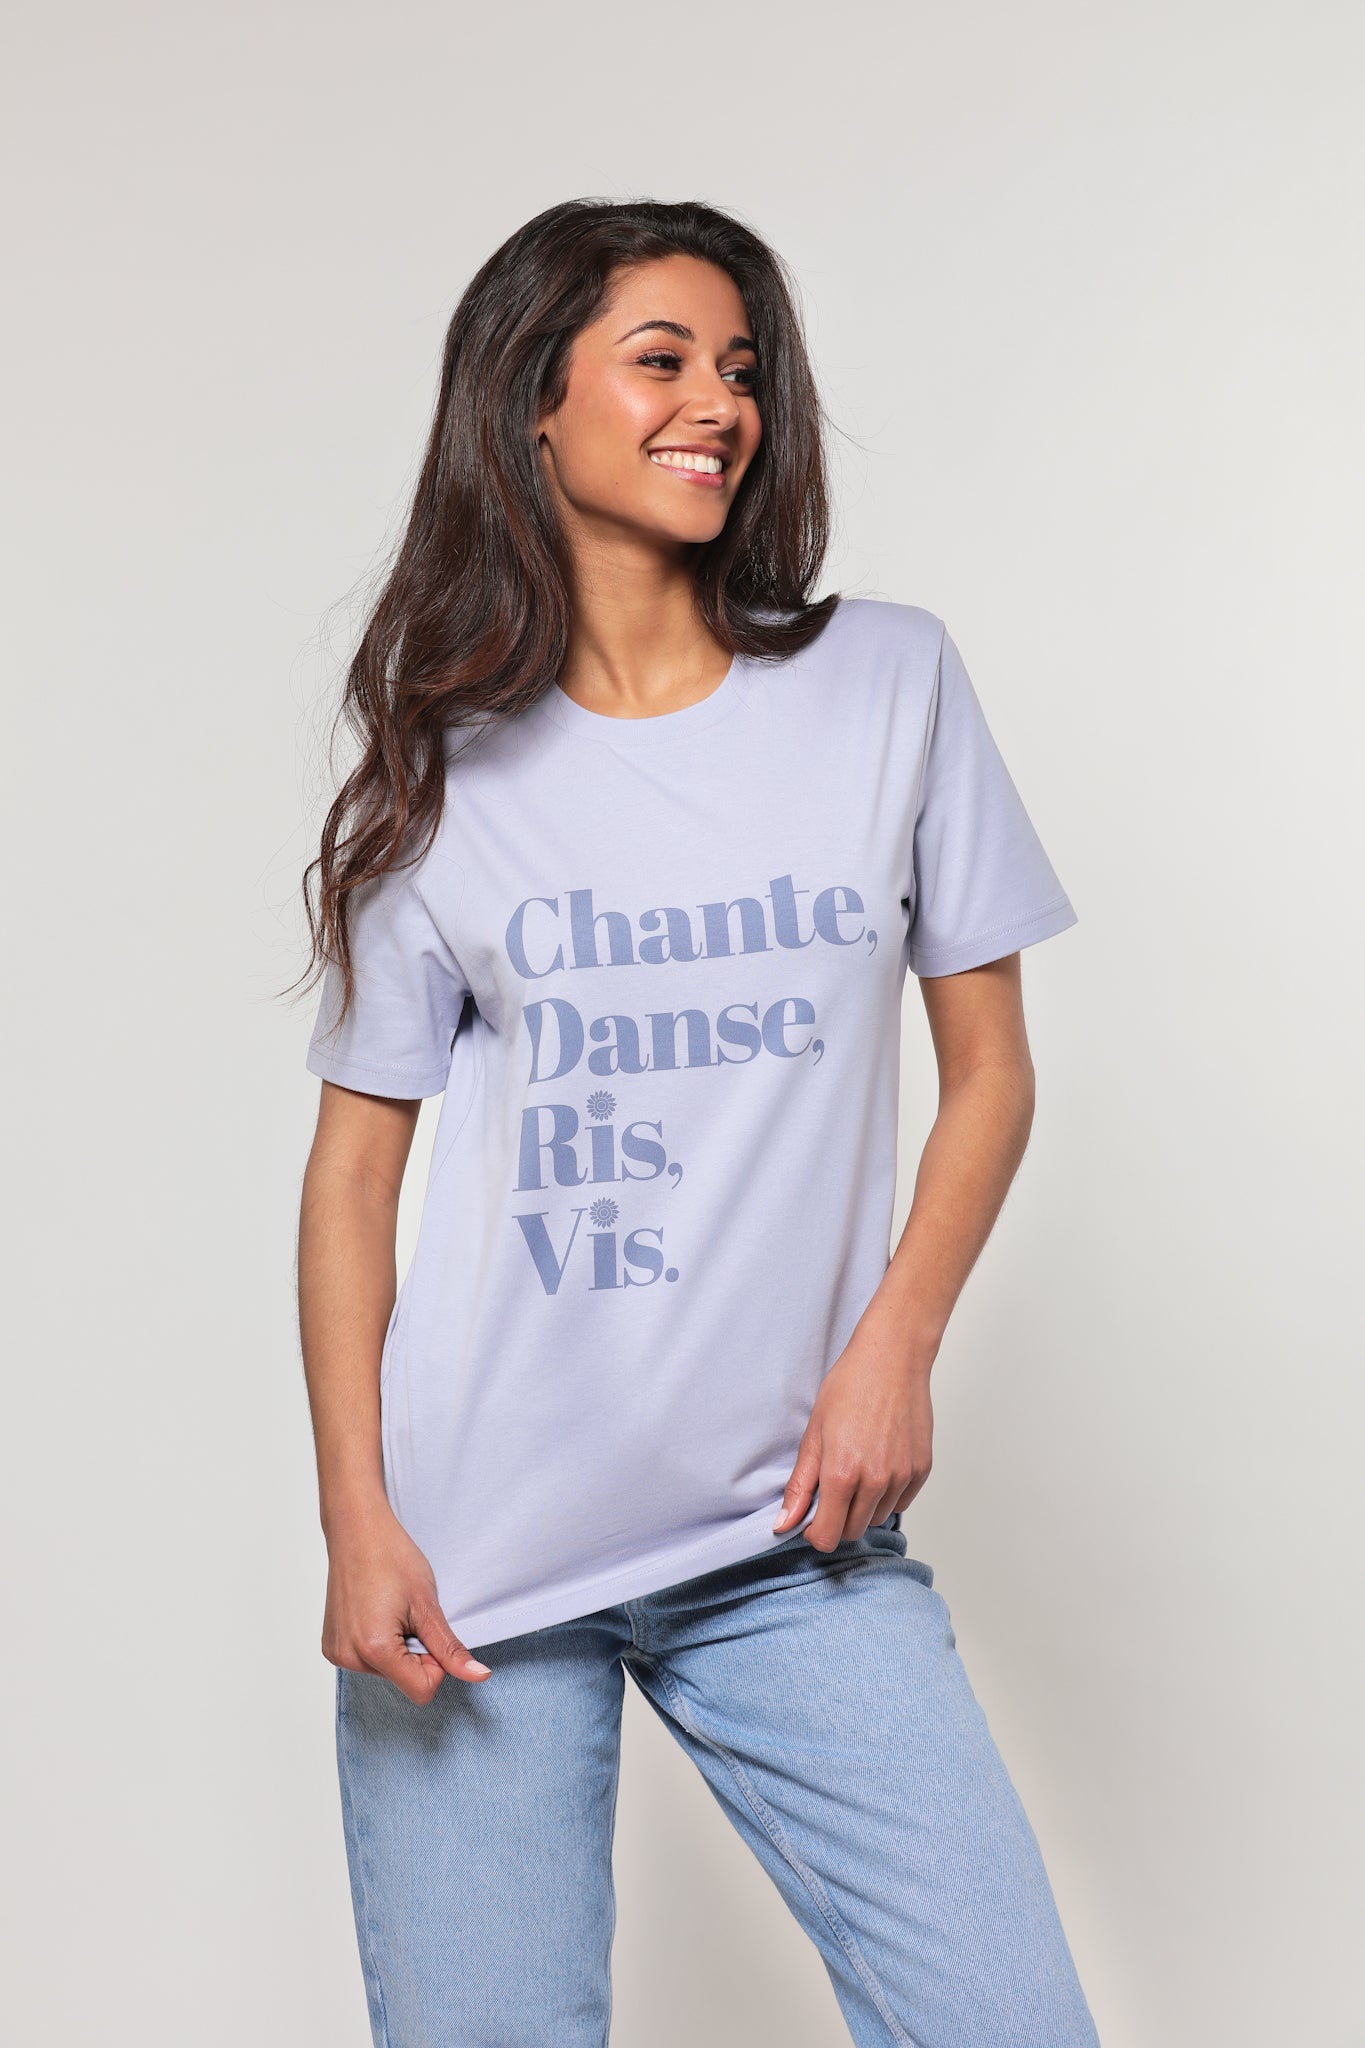 Mannequin femme, brune aux cheveux longs, regard de profil, mains sur son t-shirt, porte un t-shirt lavande avec inscription "Chante, danse, ris, vis" en violet.